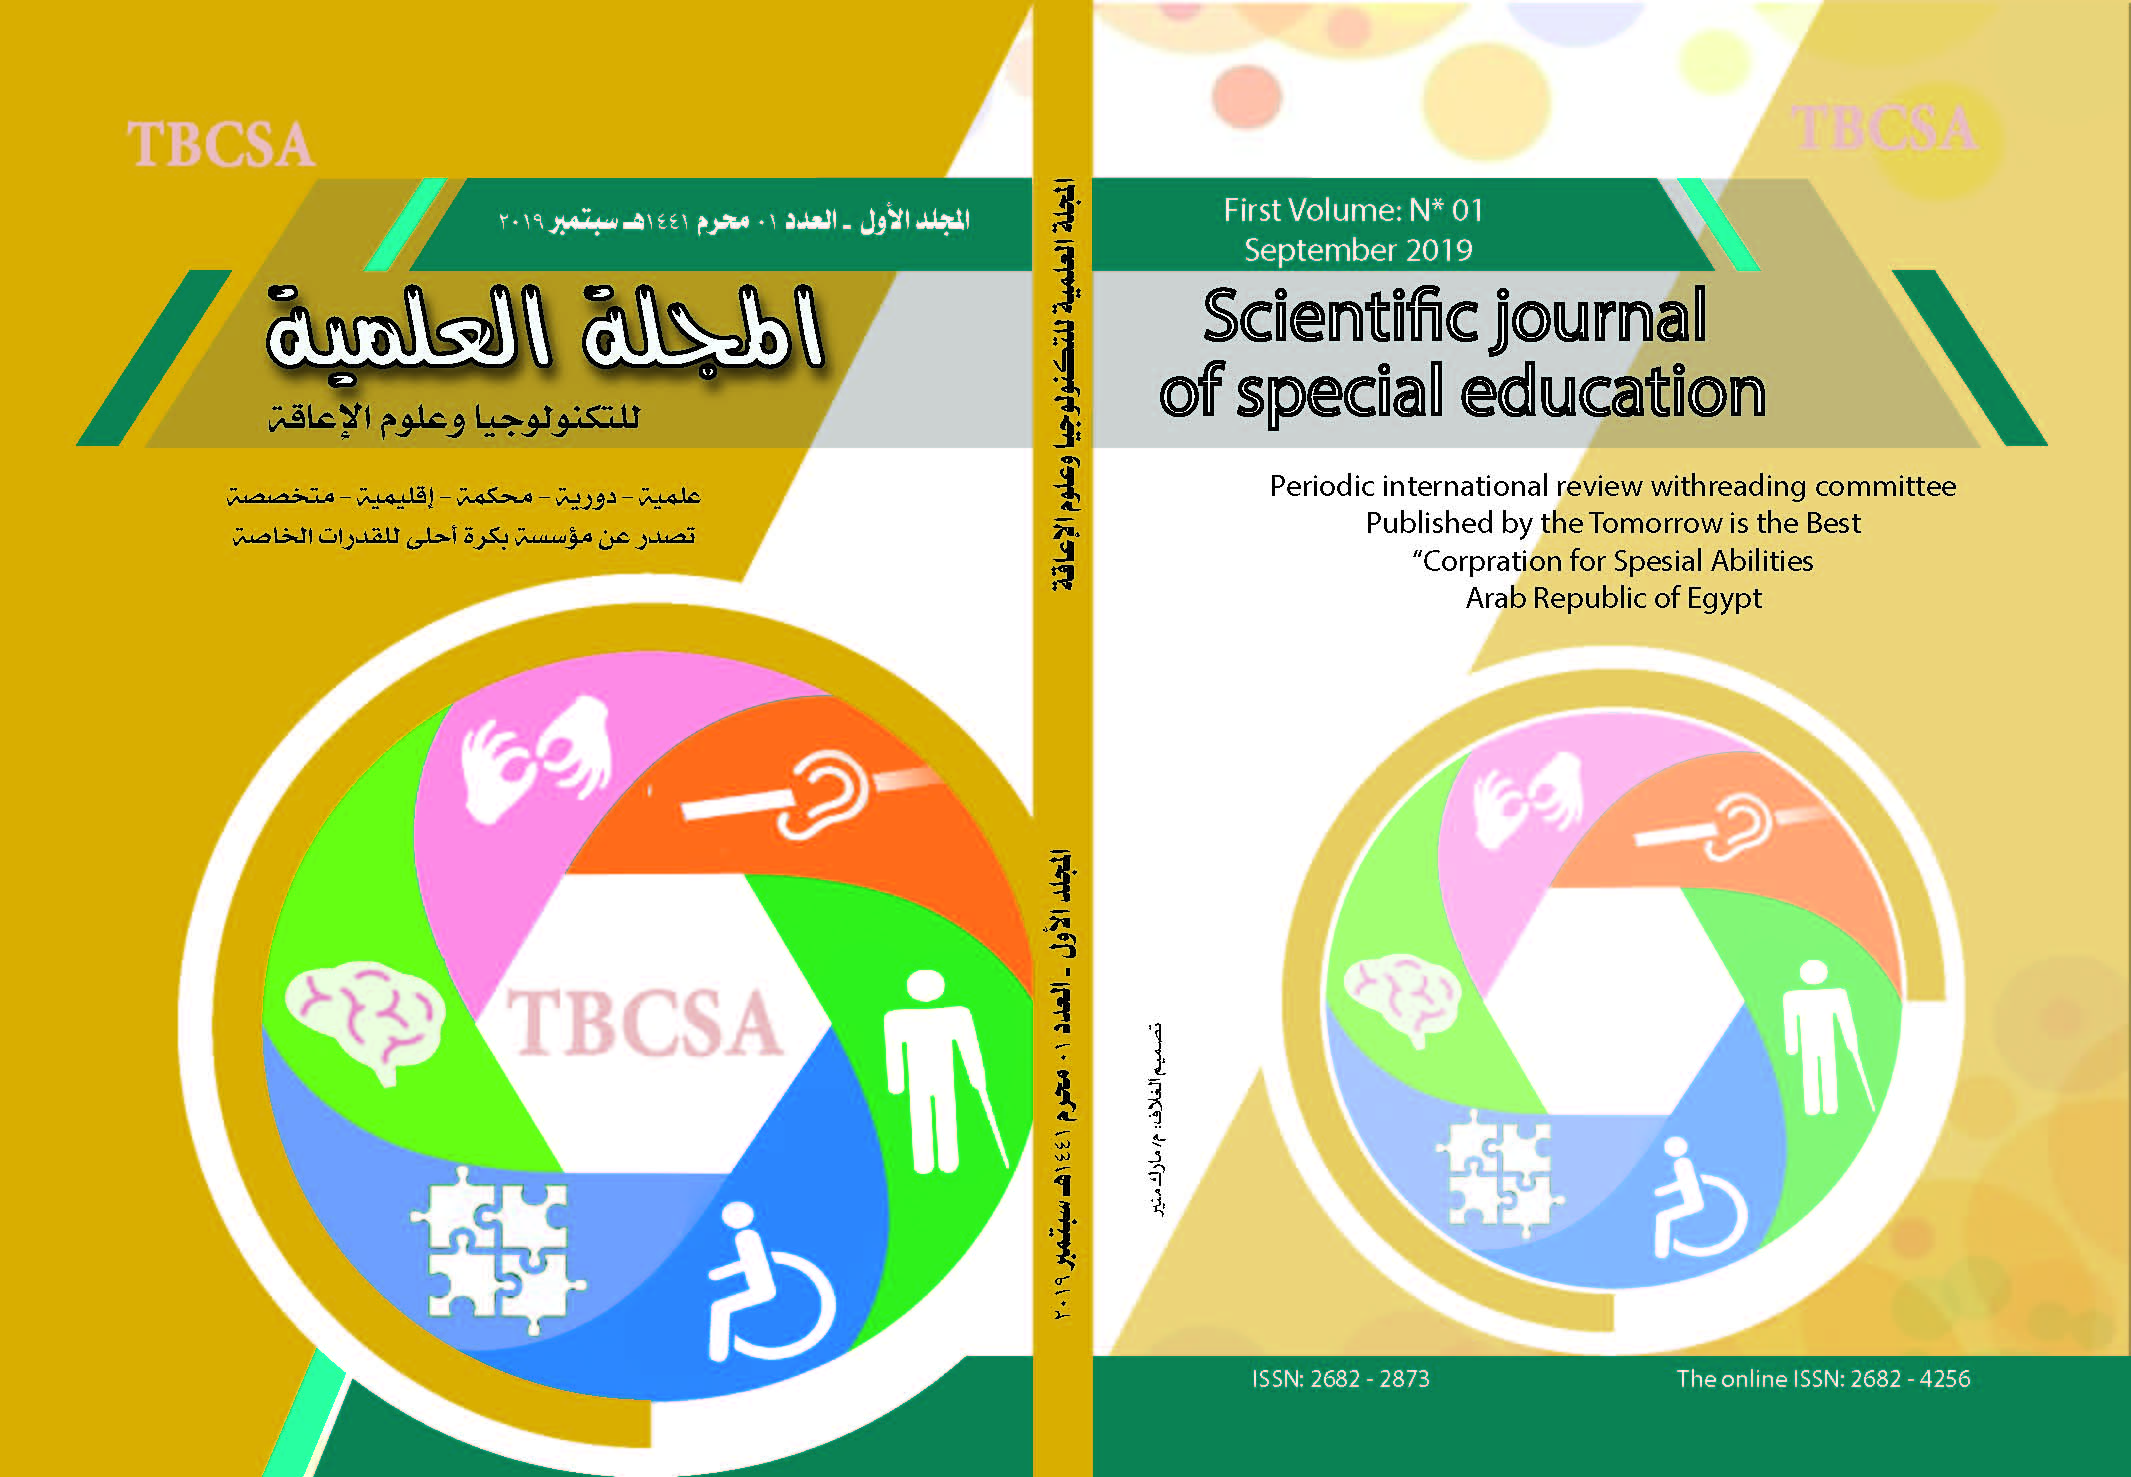 المجلة العلمية للتکنولوجيا وعلوم الإعاقة